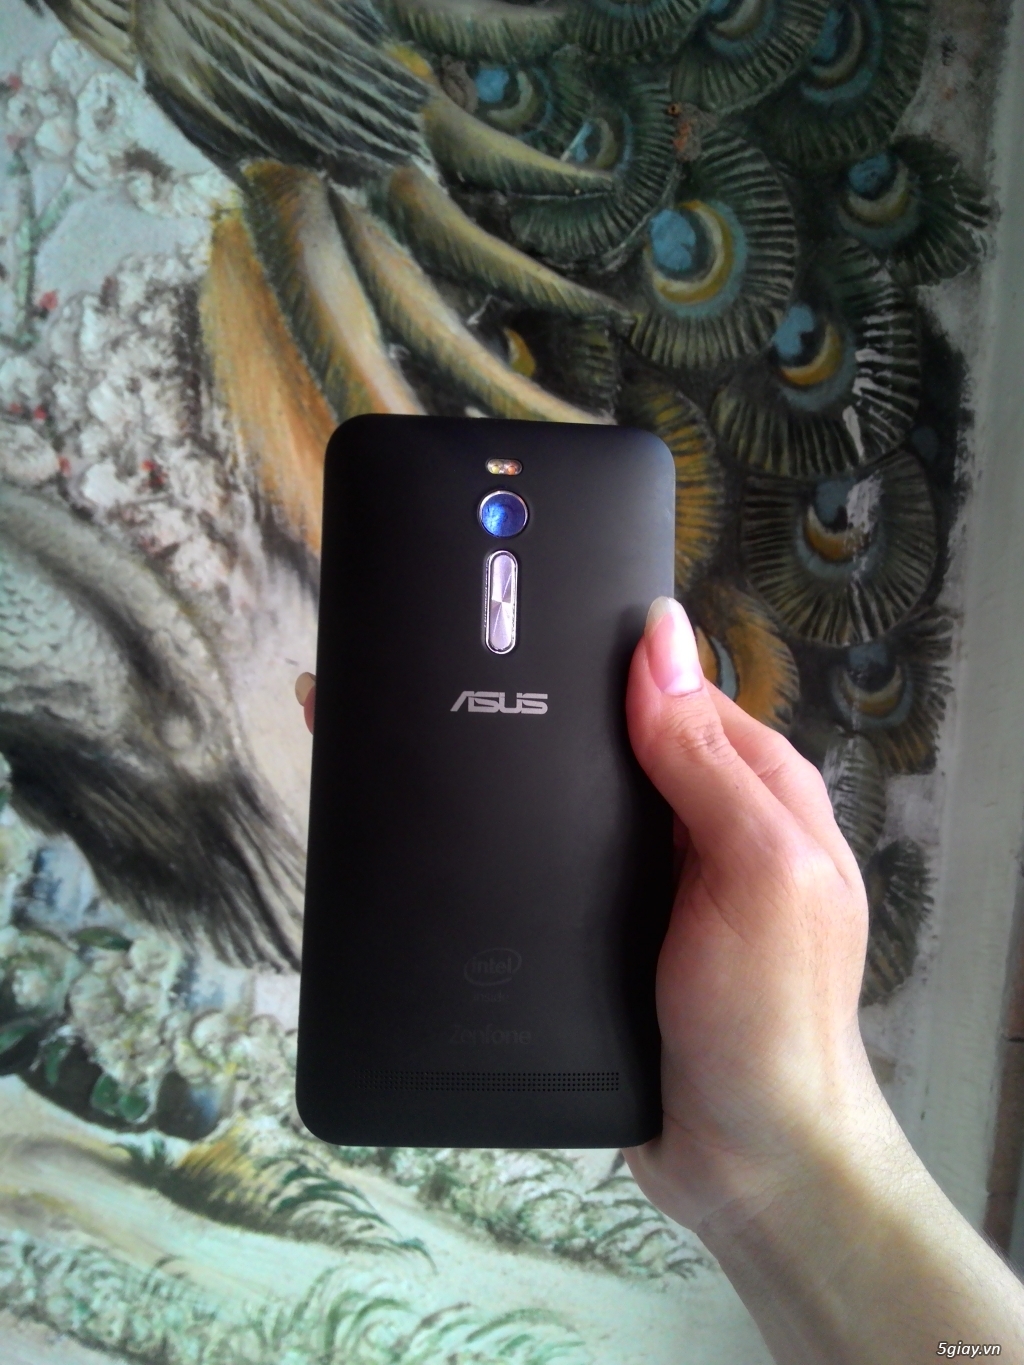 Asus Zenfone 2 Ram 4Gb 64Gb 4tr2, Zen 6 2tr4, Zen 4 900k, Lumia 630 1tr2.......! Có hình!!! - 2